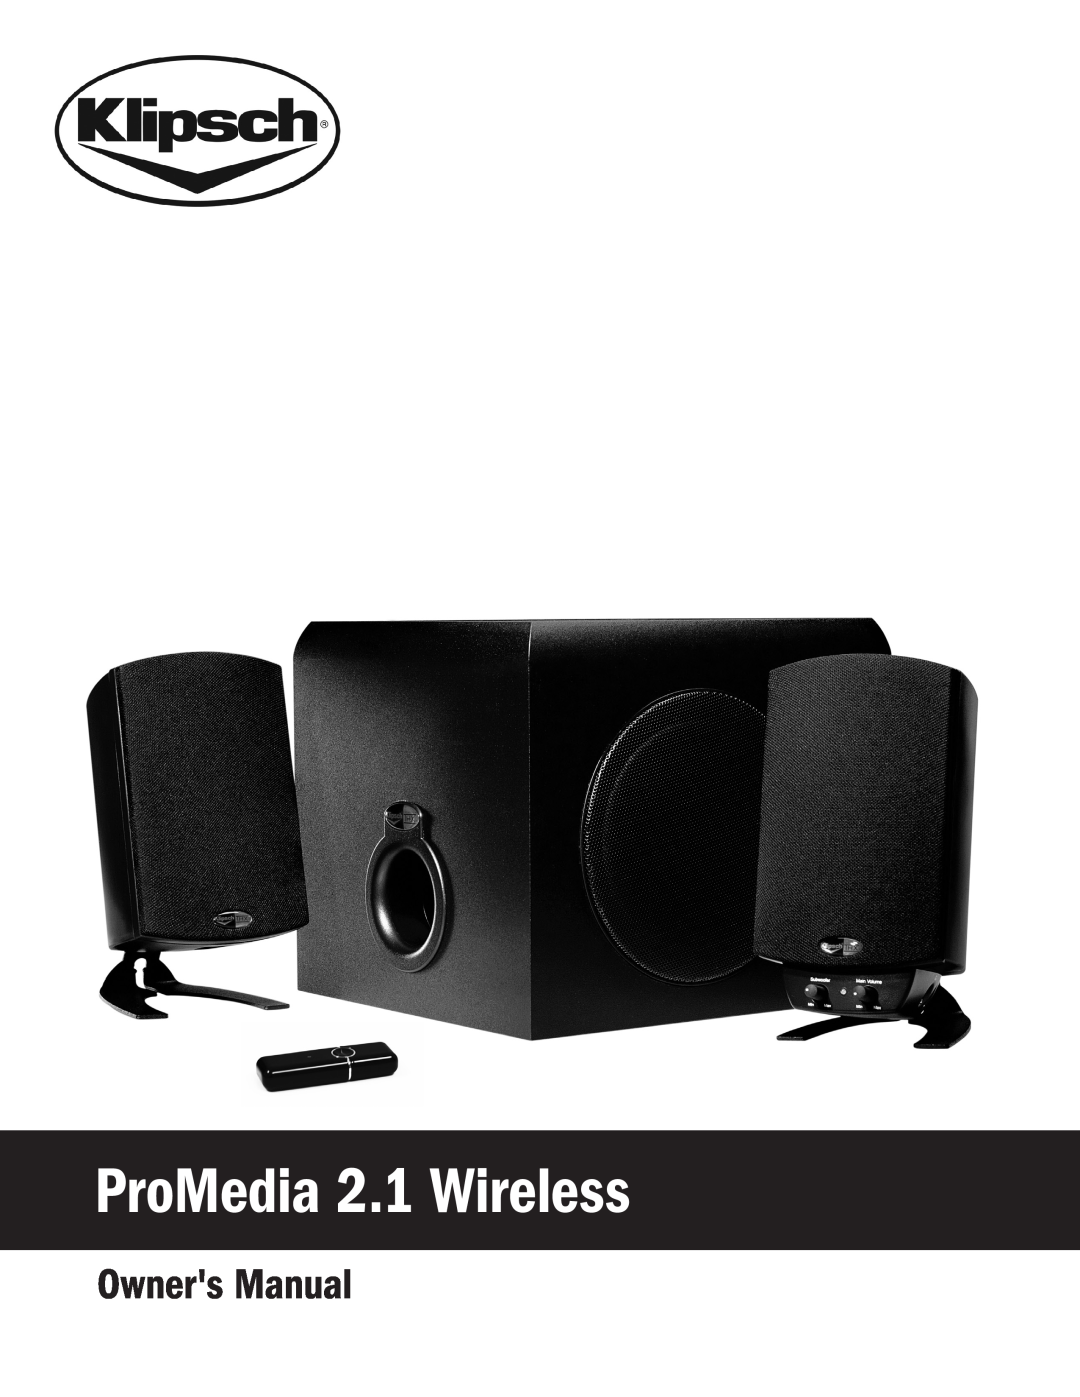 Klipsch owner manual ProMedia 2.1 Wireless 